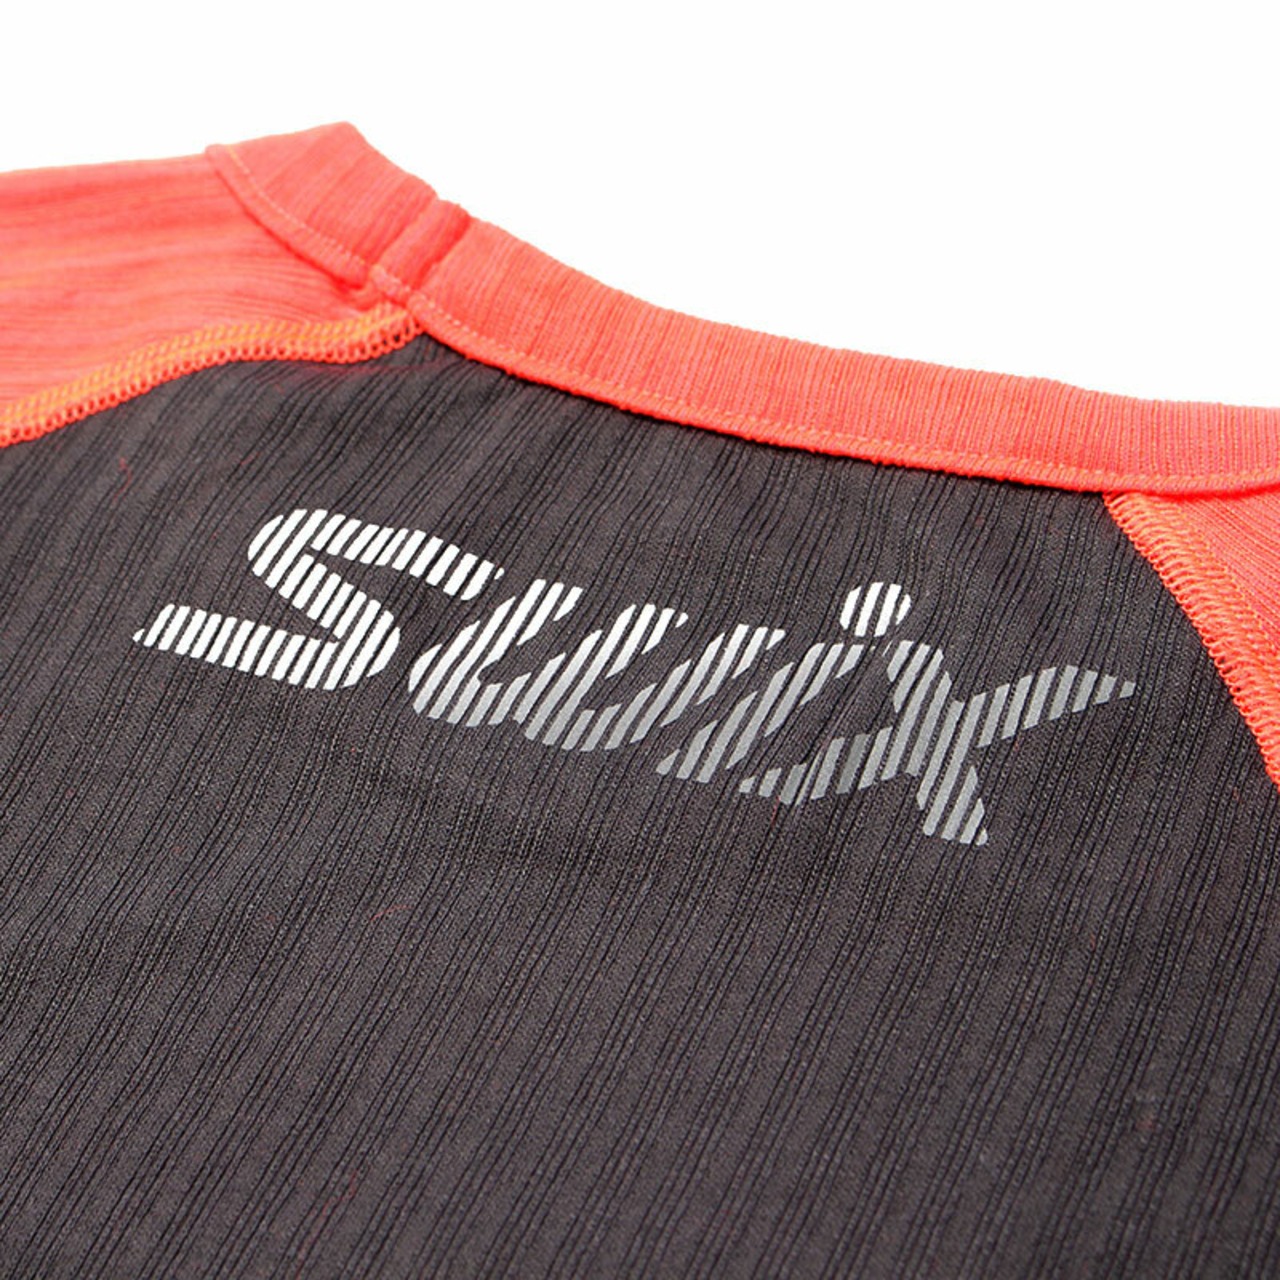 SWIX(スウィックス) Radiant レースX LS 長袖 レディース 40606-90015 ベースレイヤー インナー トレッキング アウトドア スポーツ ジム フィットネス ランニング ウェア